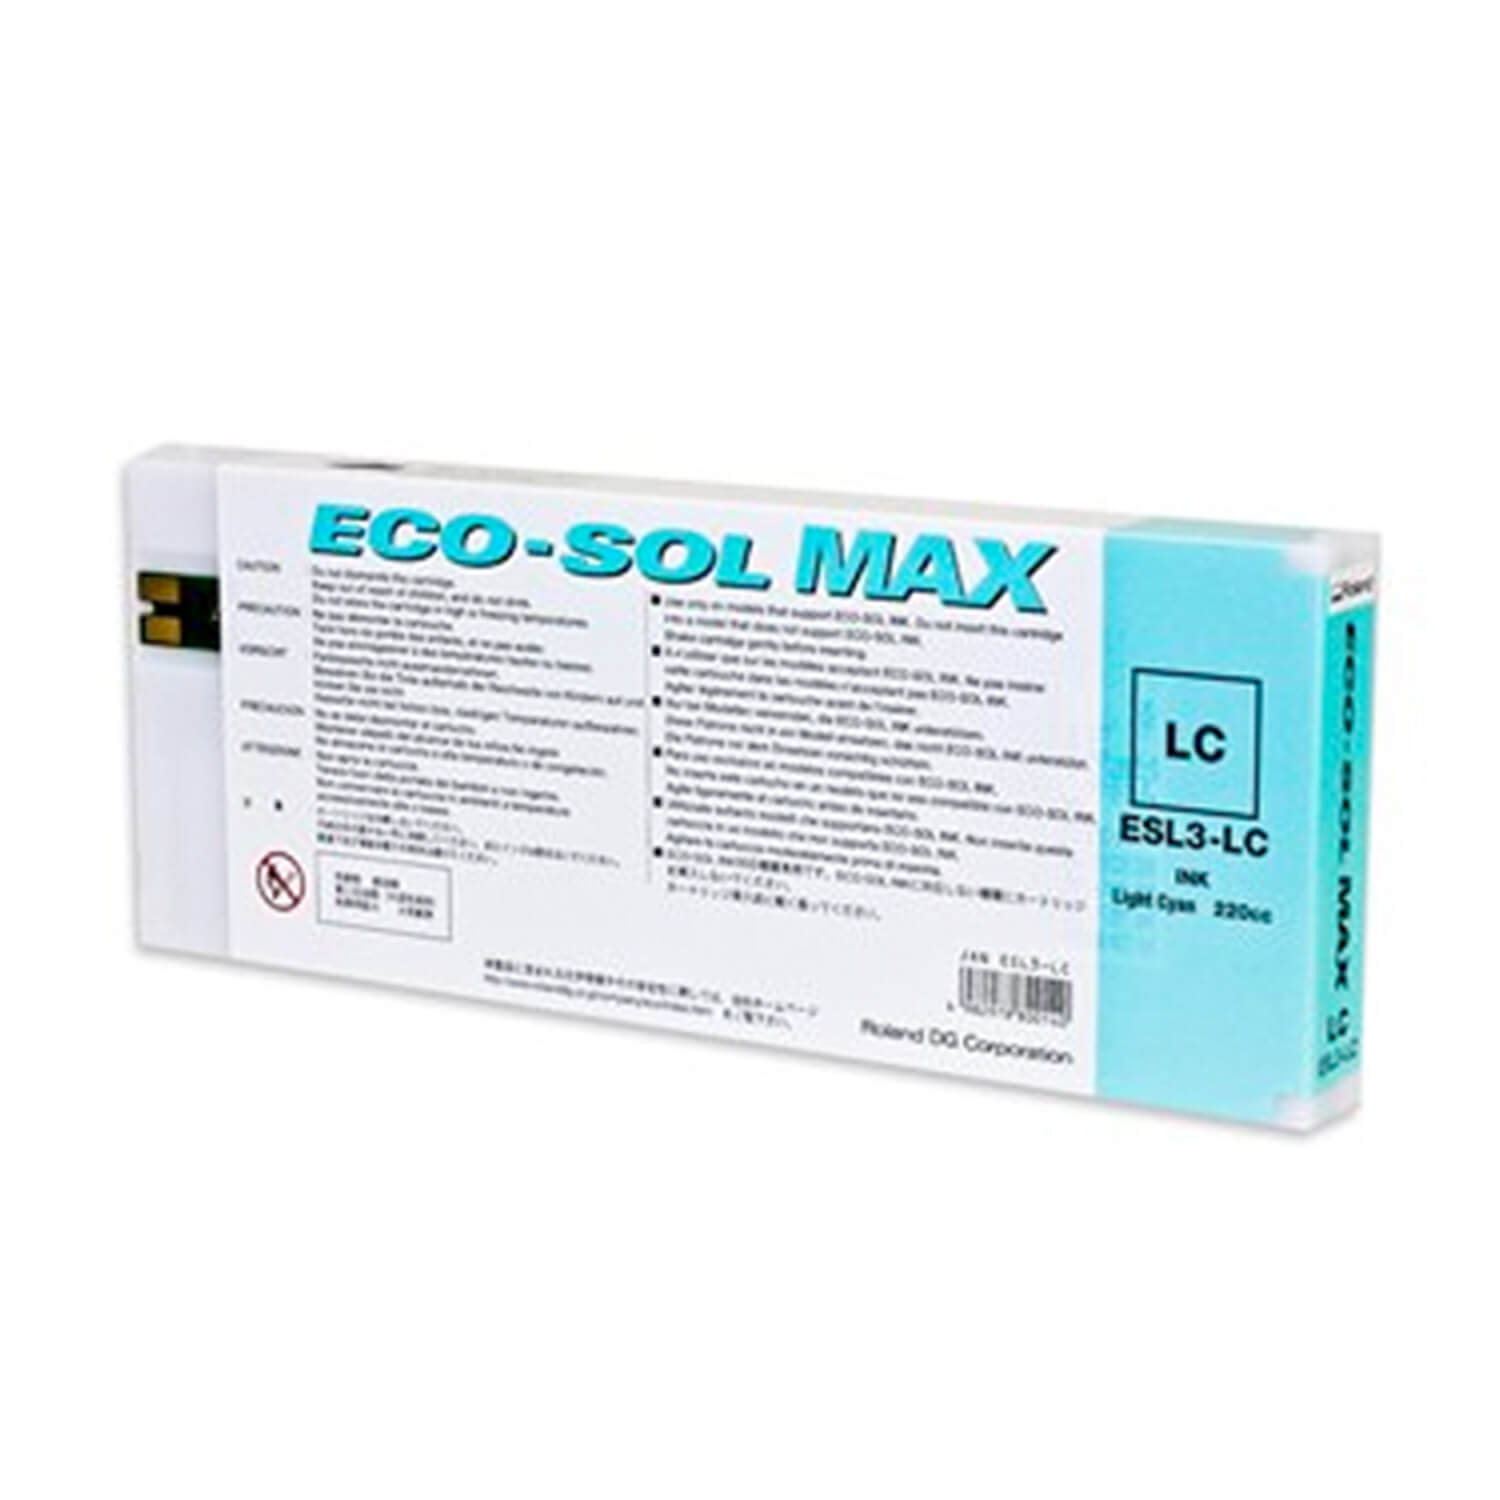 Roland DG ECO-SOL MAX Inks, 220cc Cartridges